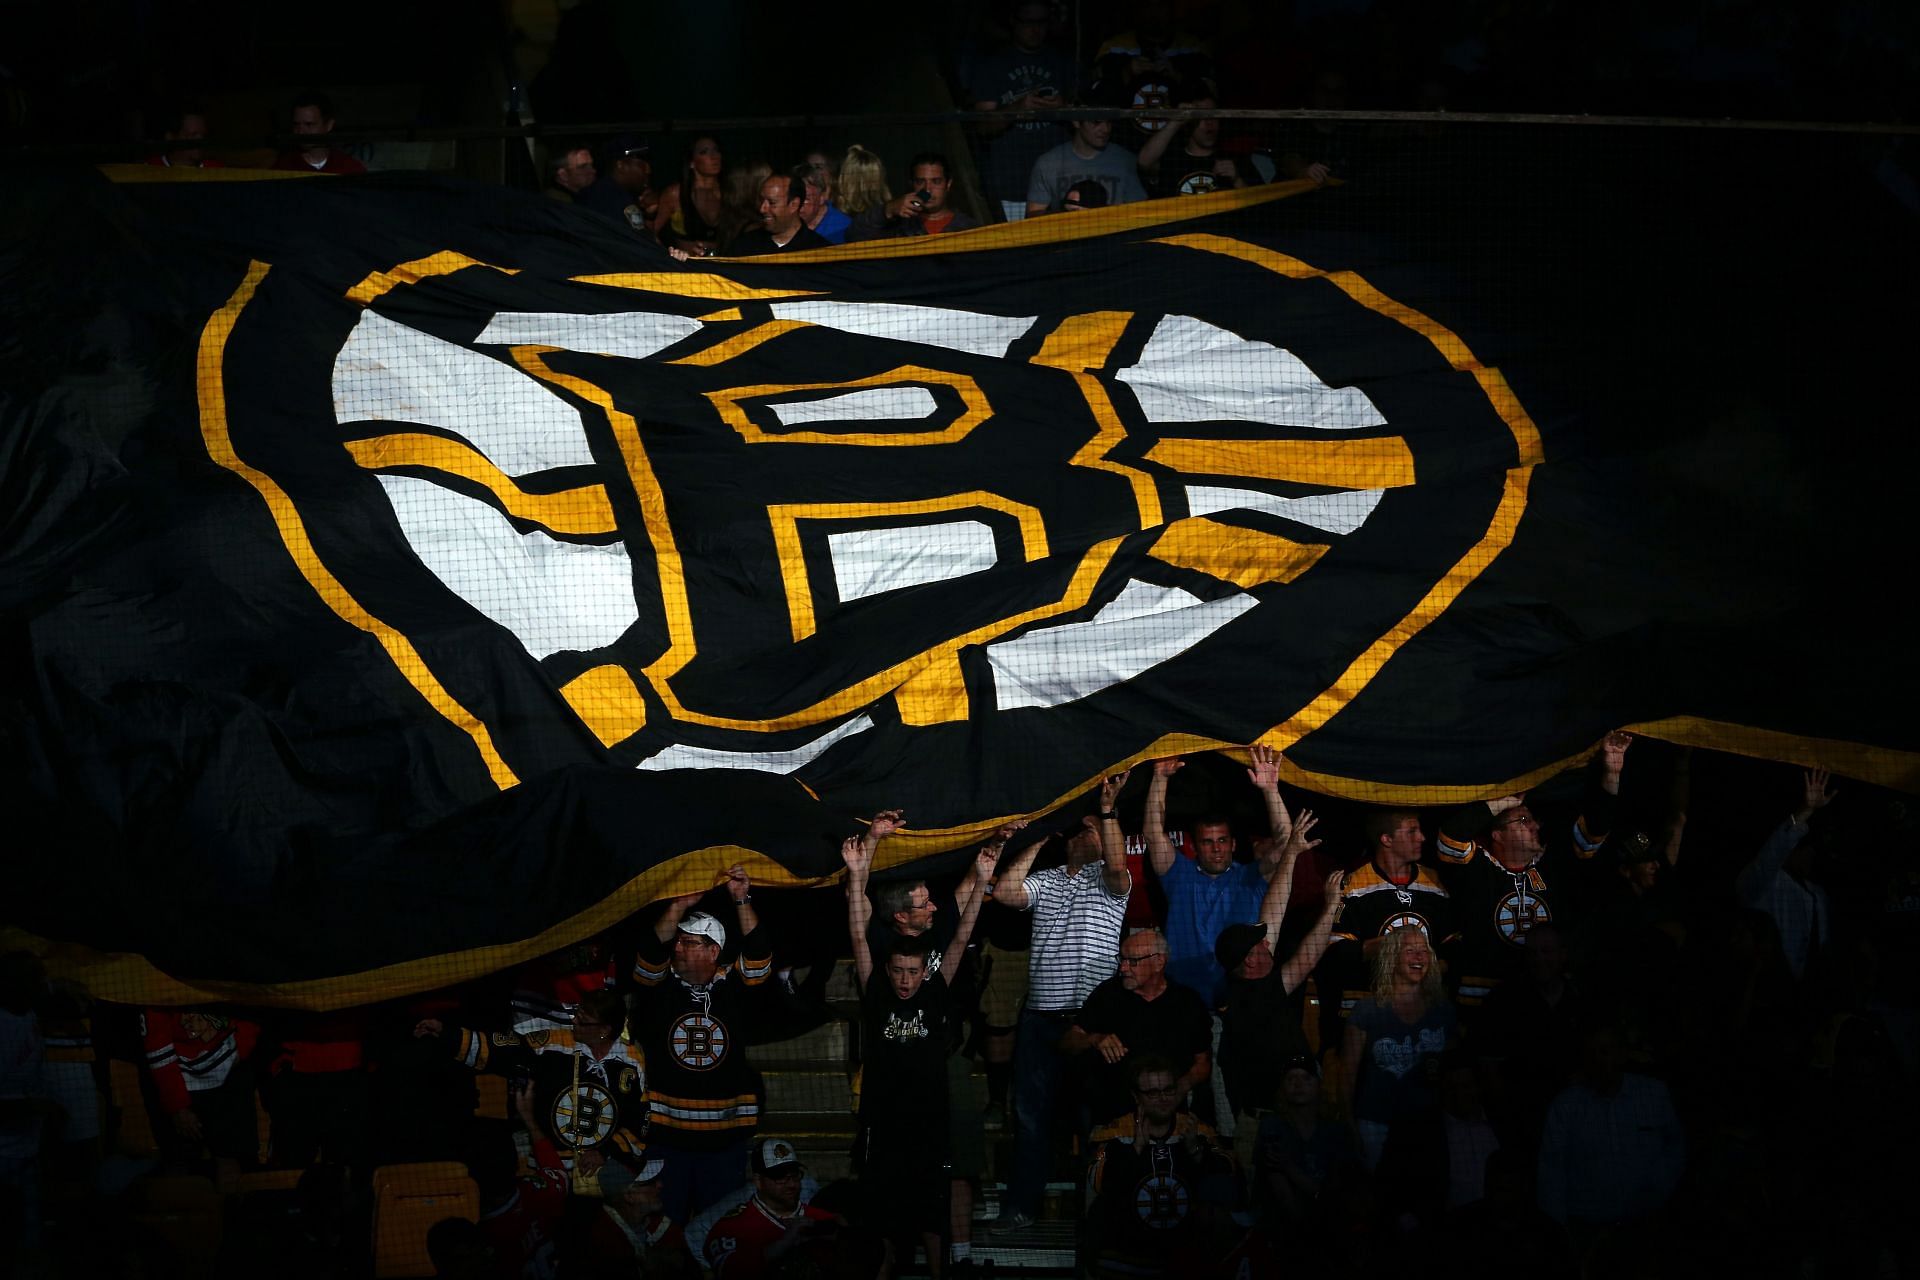 Bruins All-Centennial Team, Sports